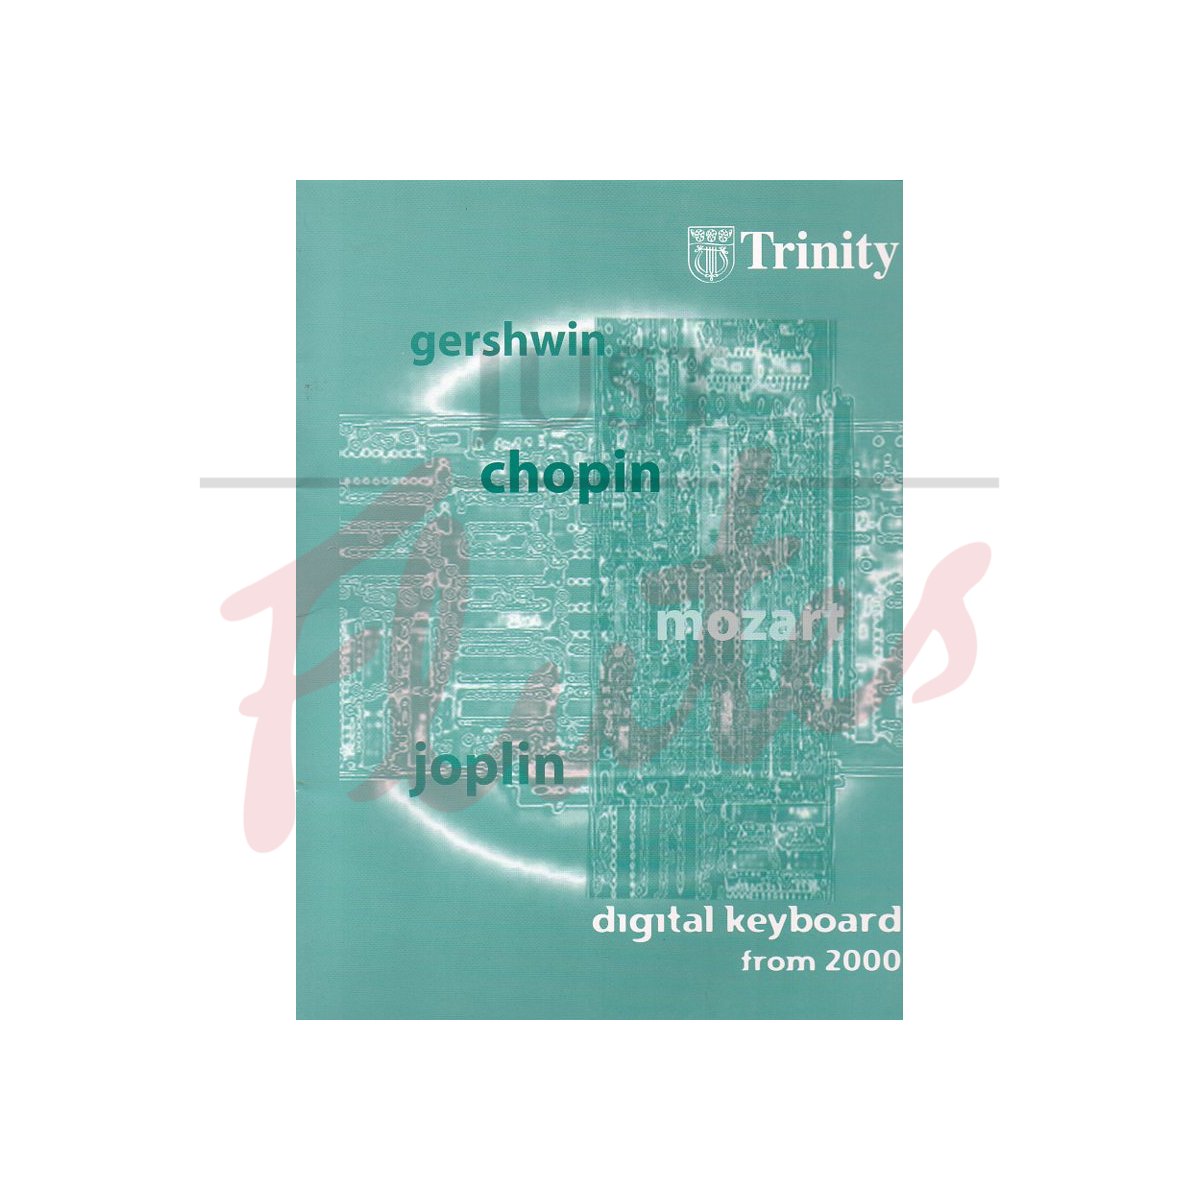 Trinity Digital Keyboard from 2000